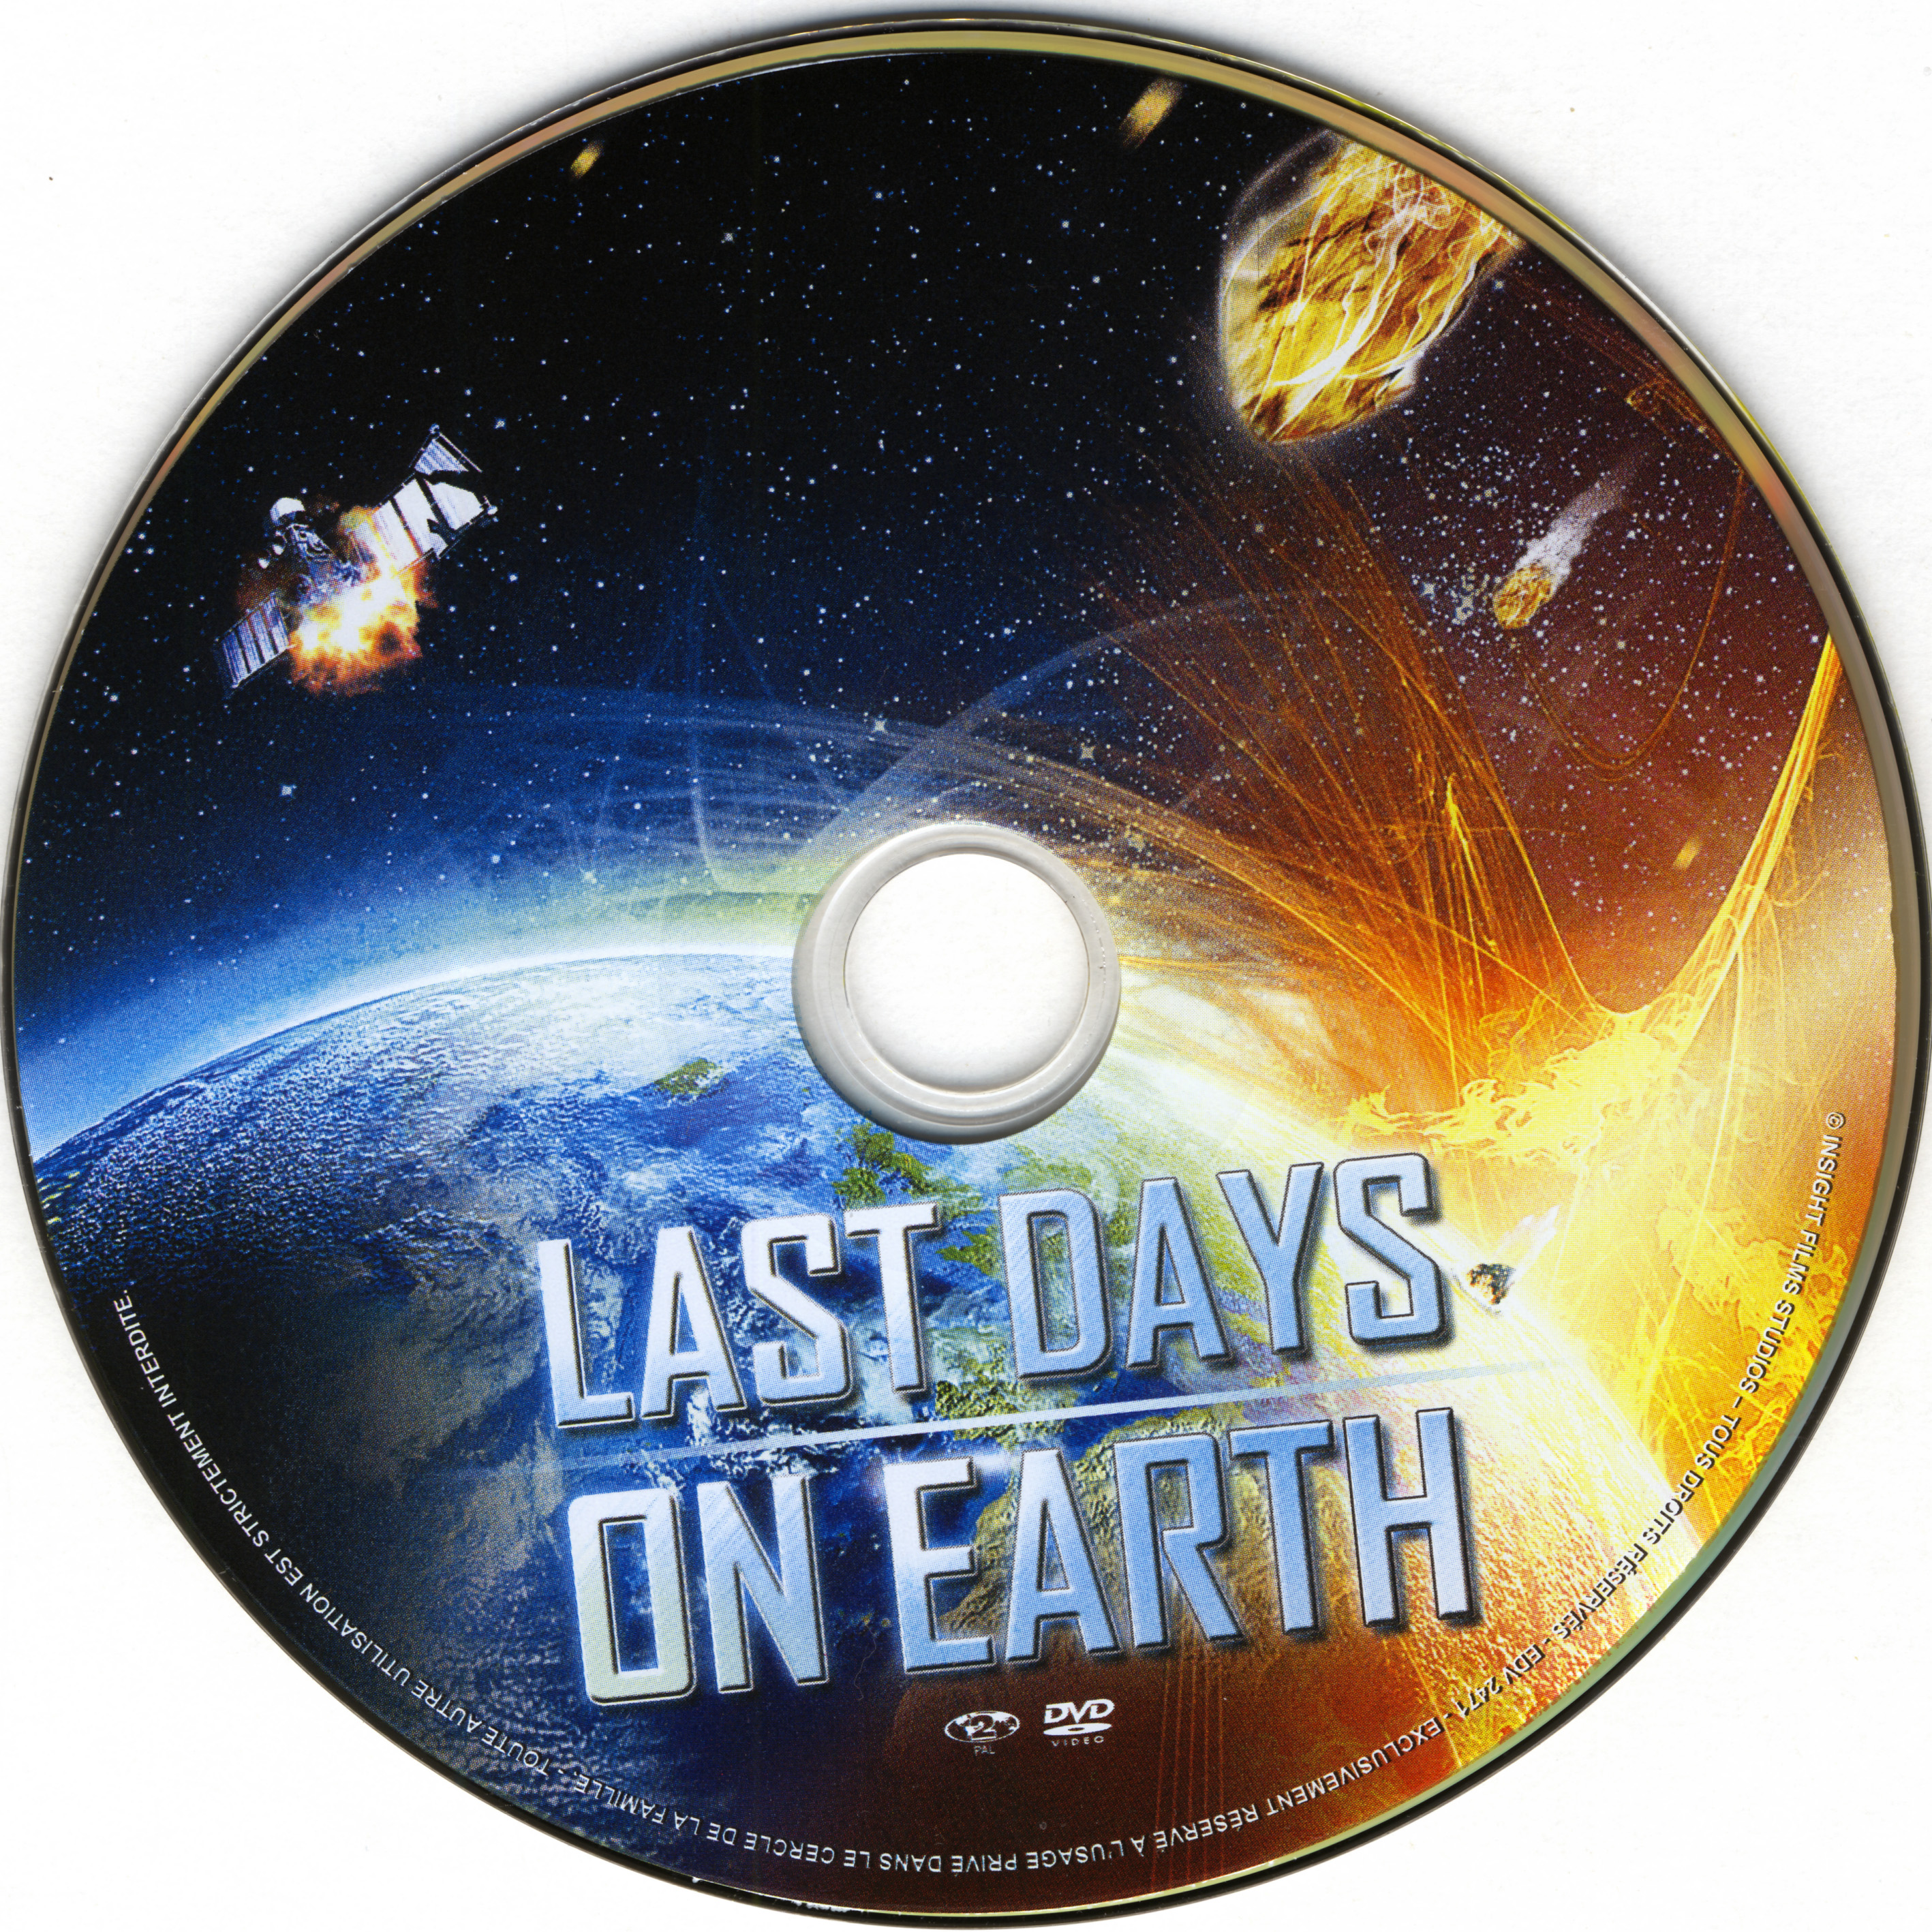 Last days on earth